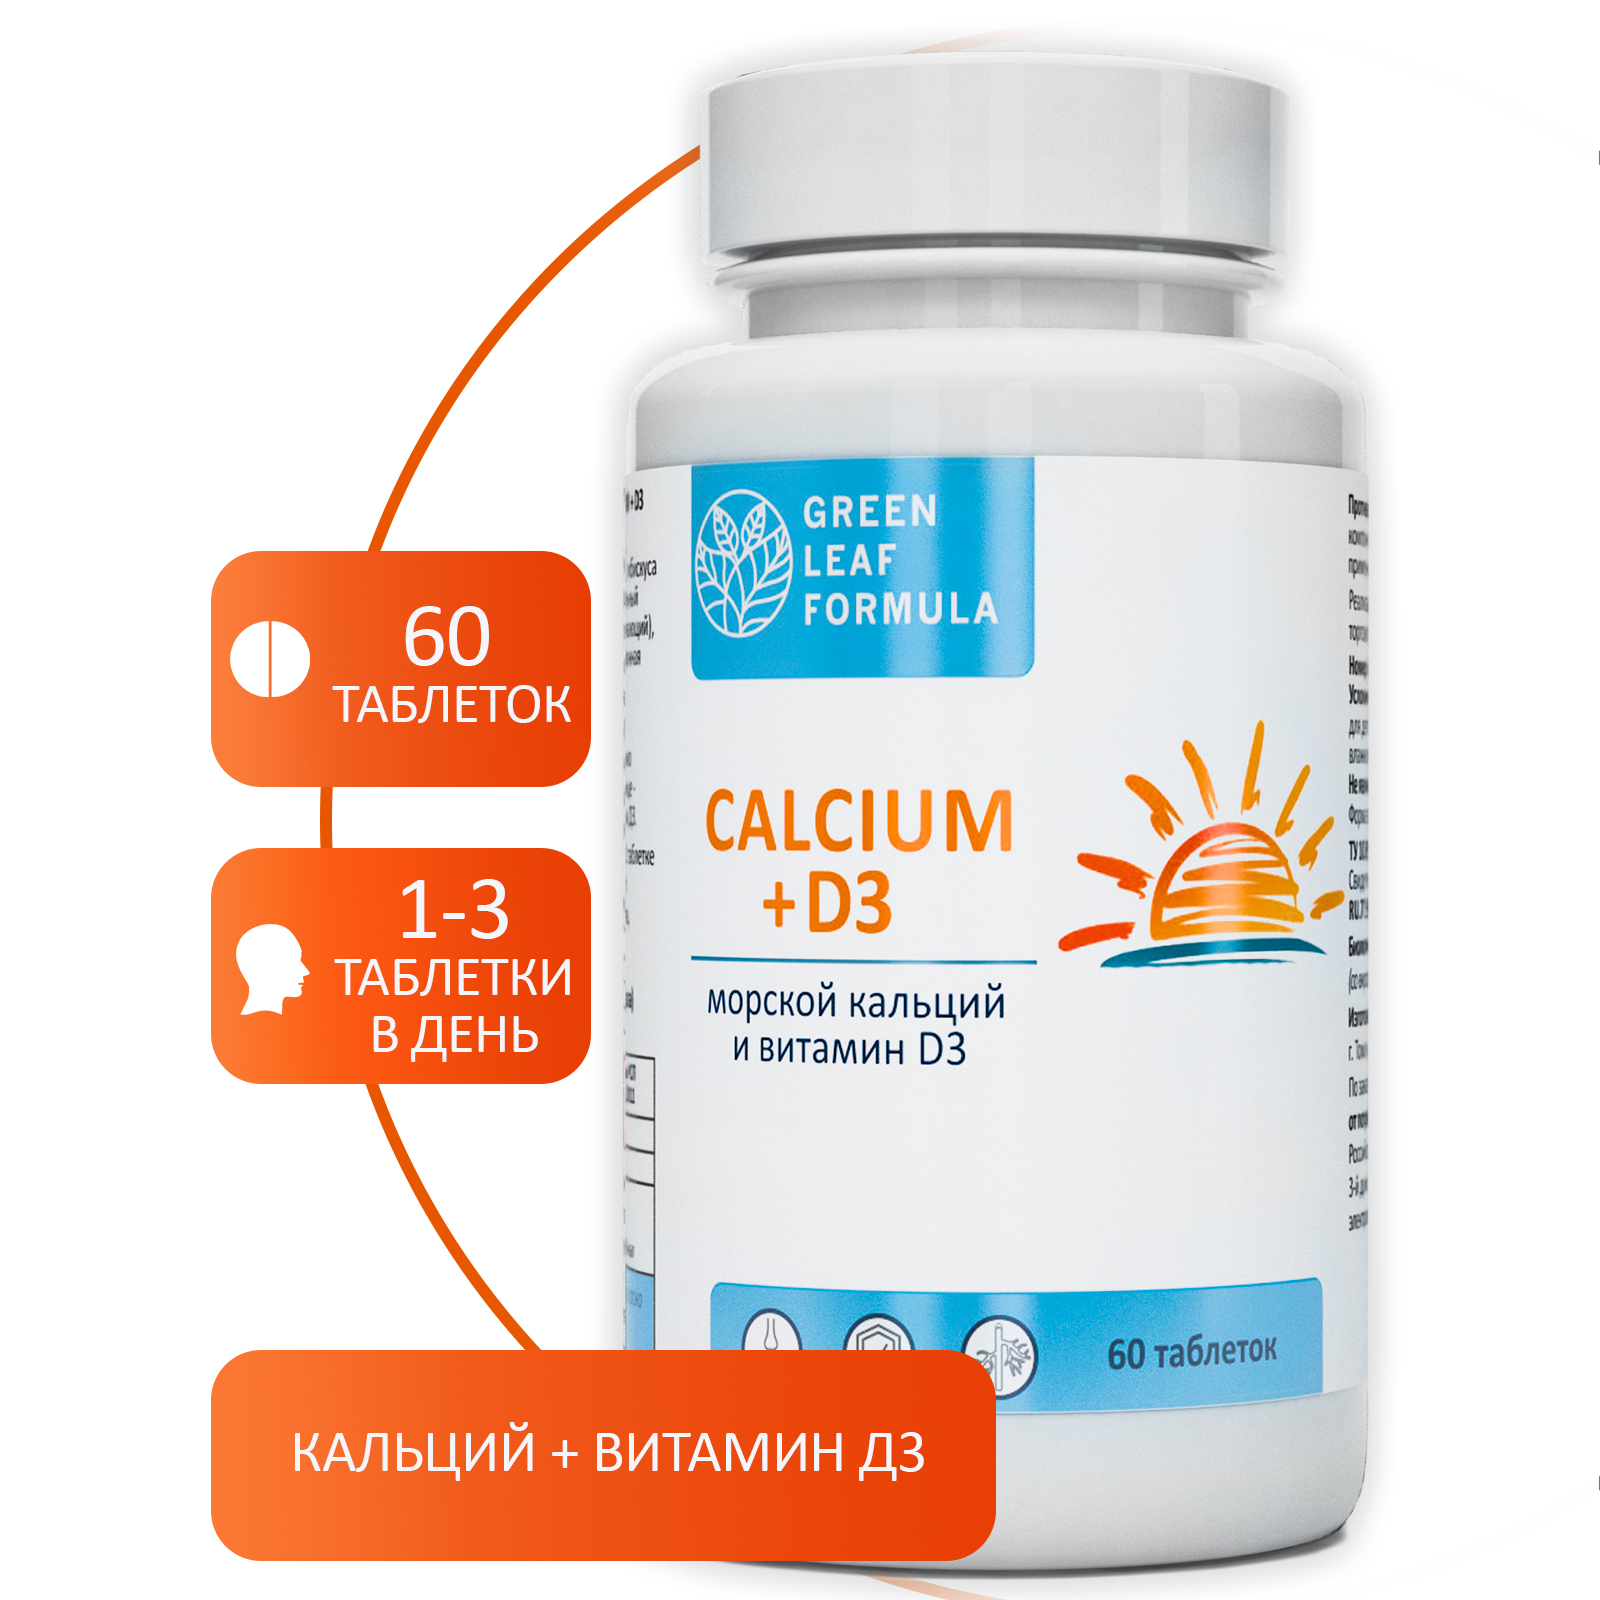 Calcium D3 Кальций Д3 Green Leaf Formula витамины для костей и суставов 3 банки по 60 таблеток - фото 3